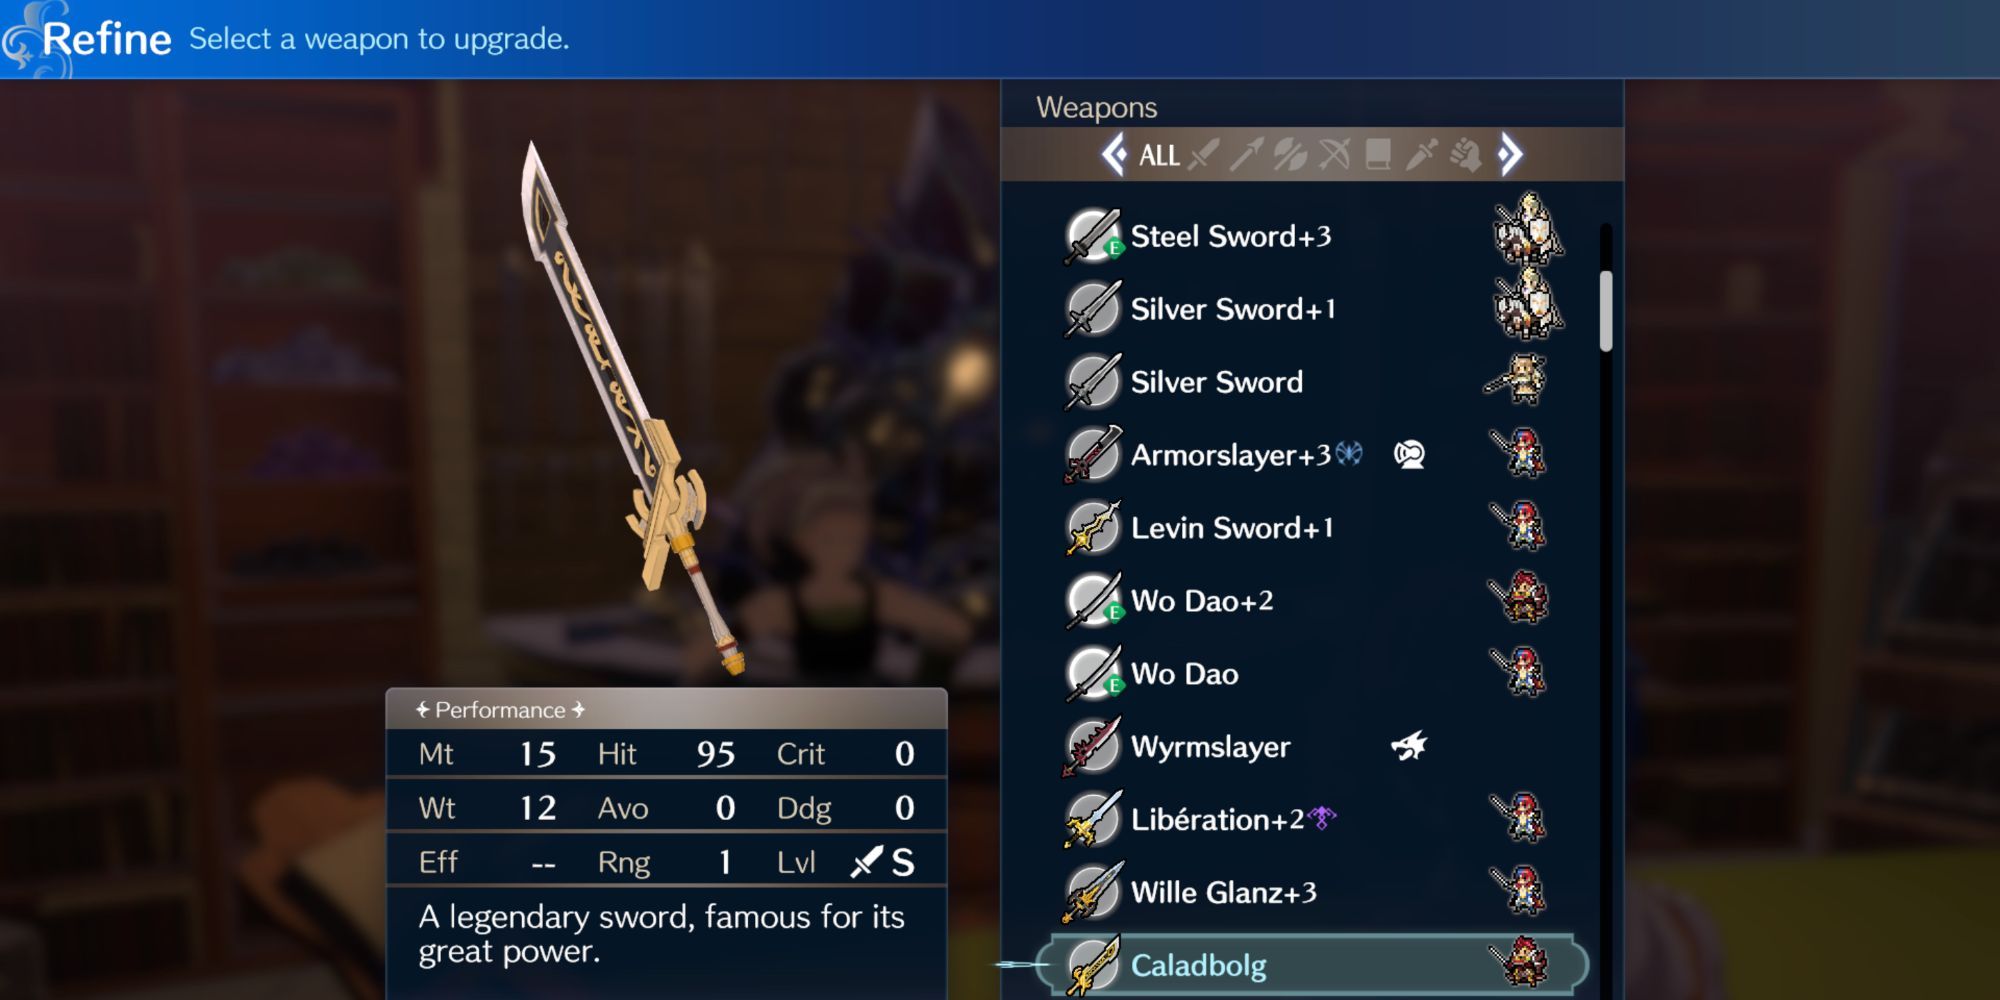 Fire Emblem Engage - Caladbolg sword in the refine menu